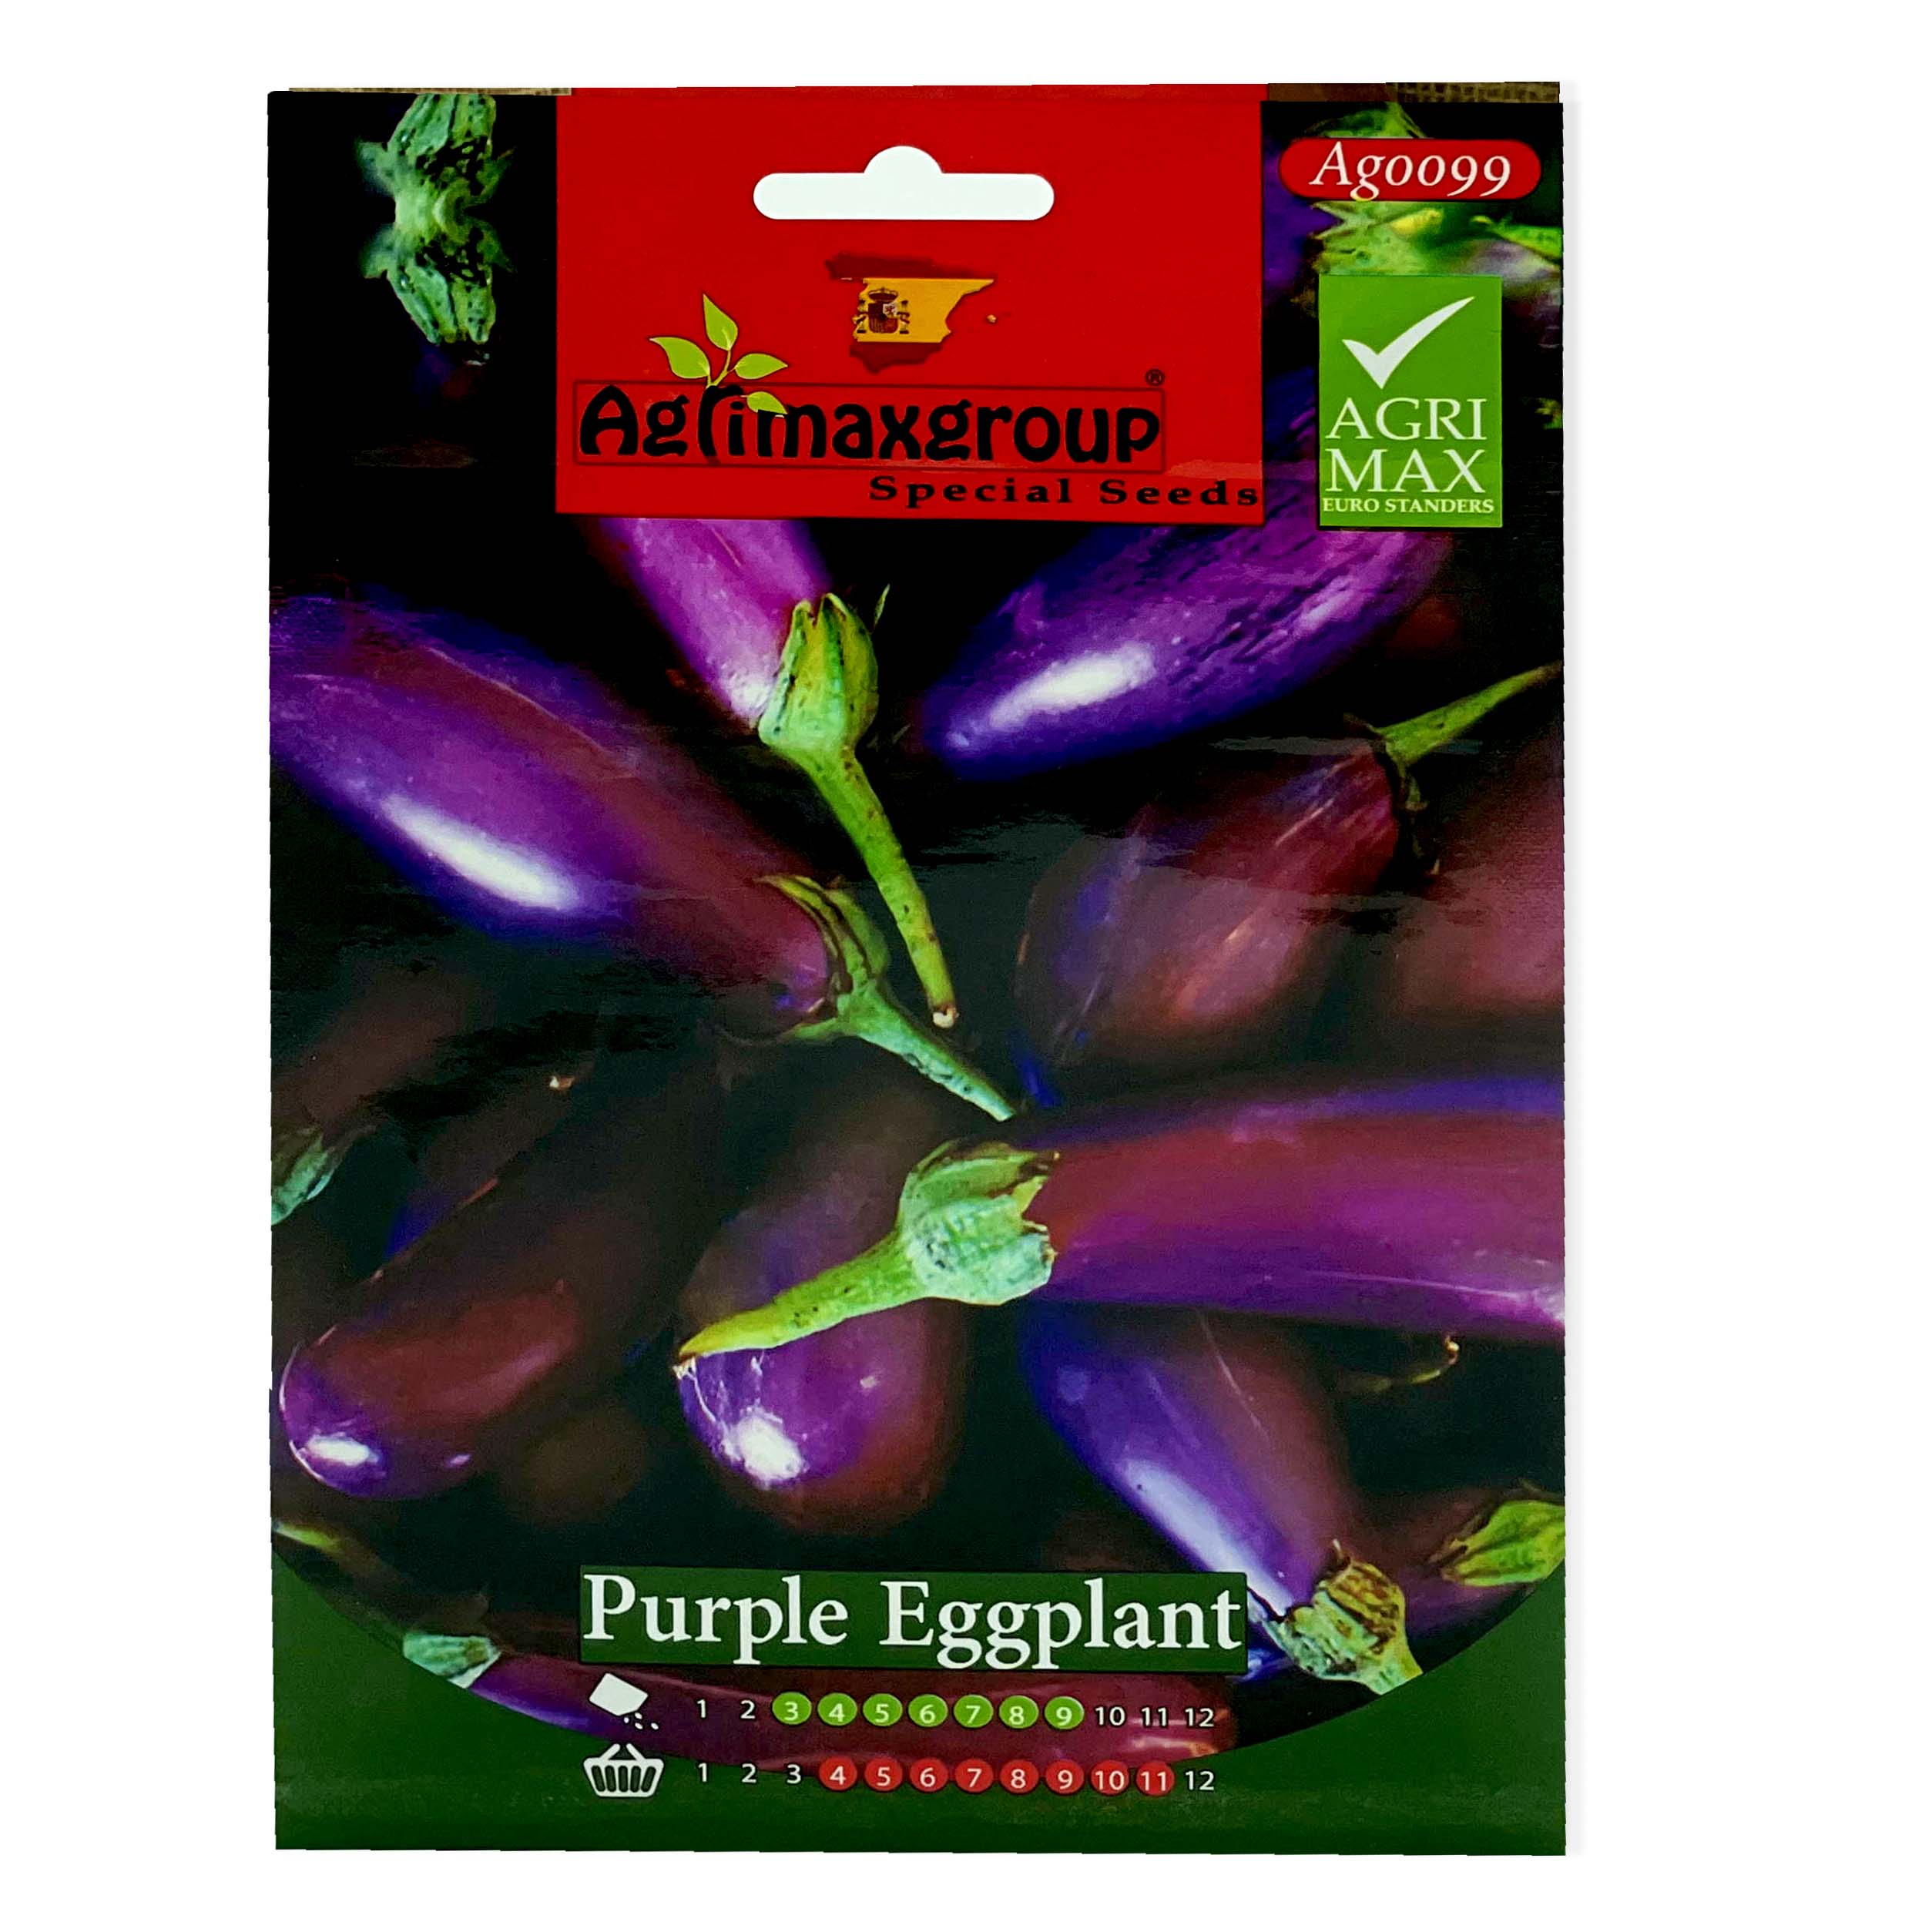 Eggplant Seeds, Aubergine Seeds, Brinjal Seeds